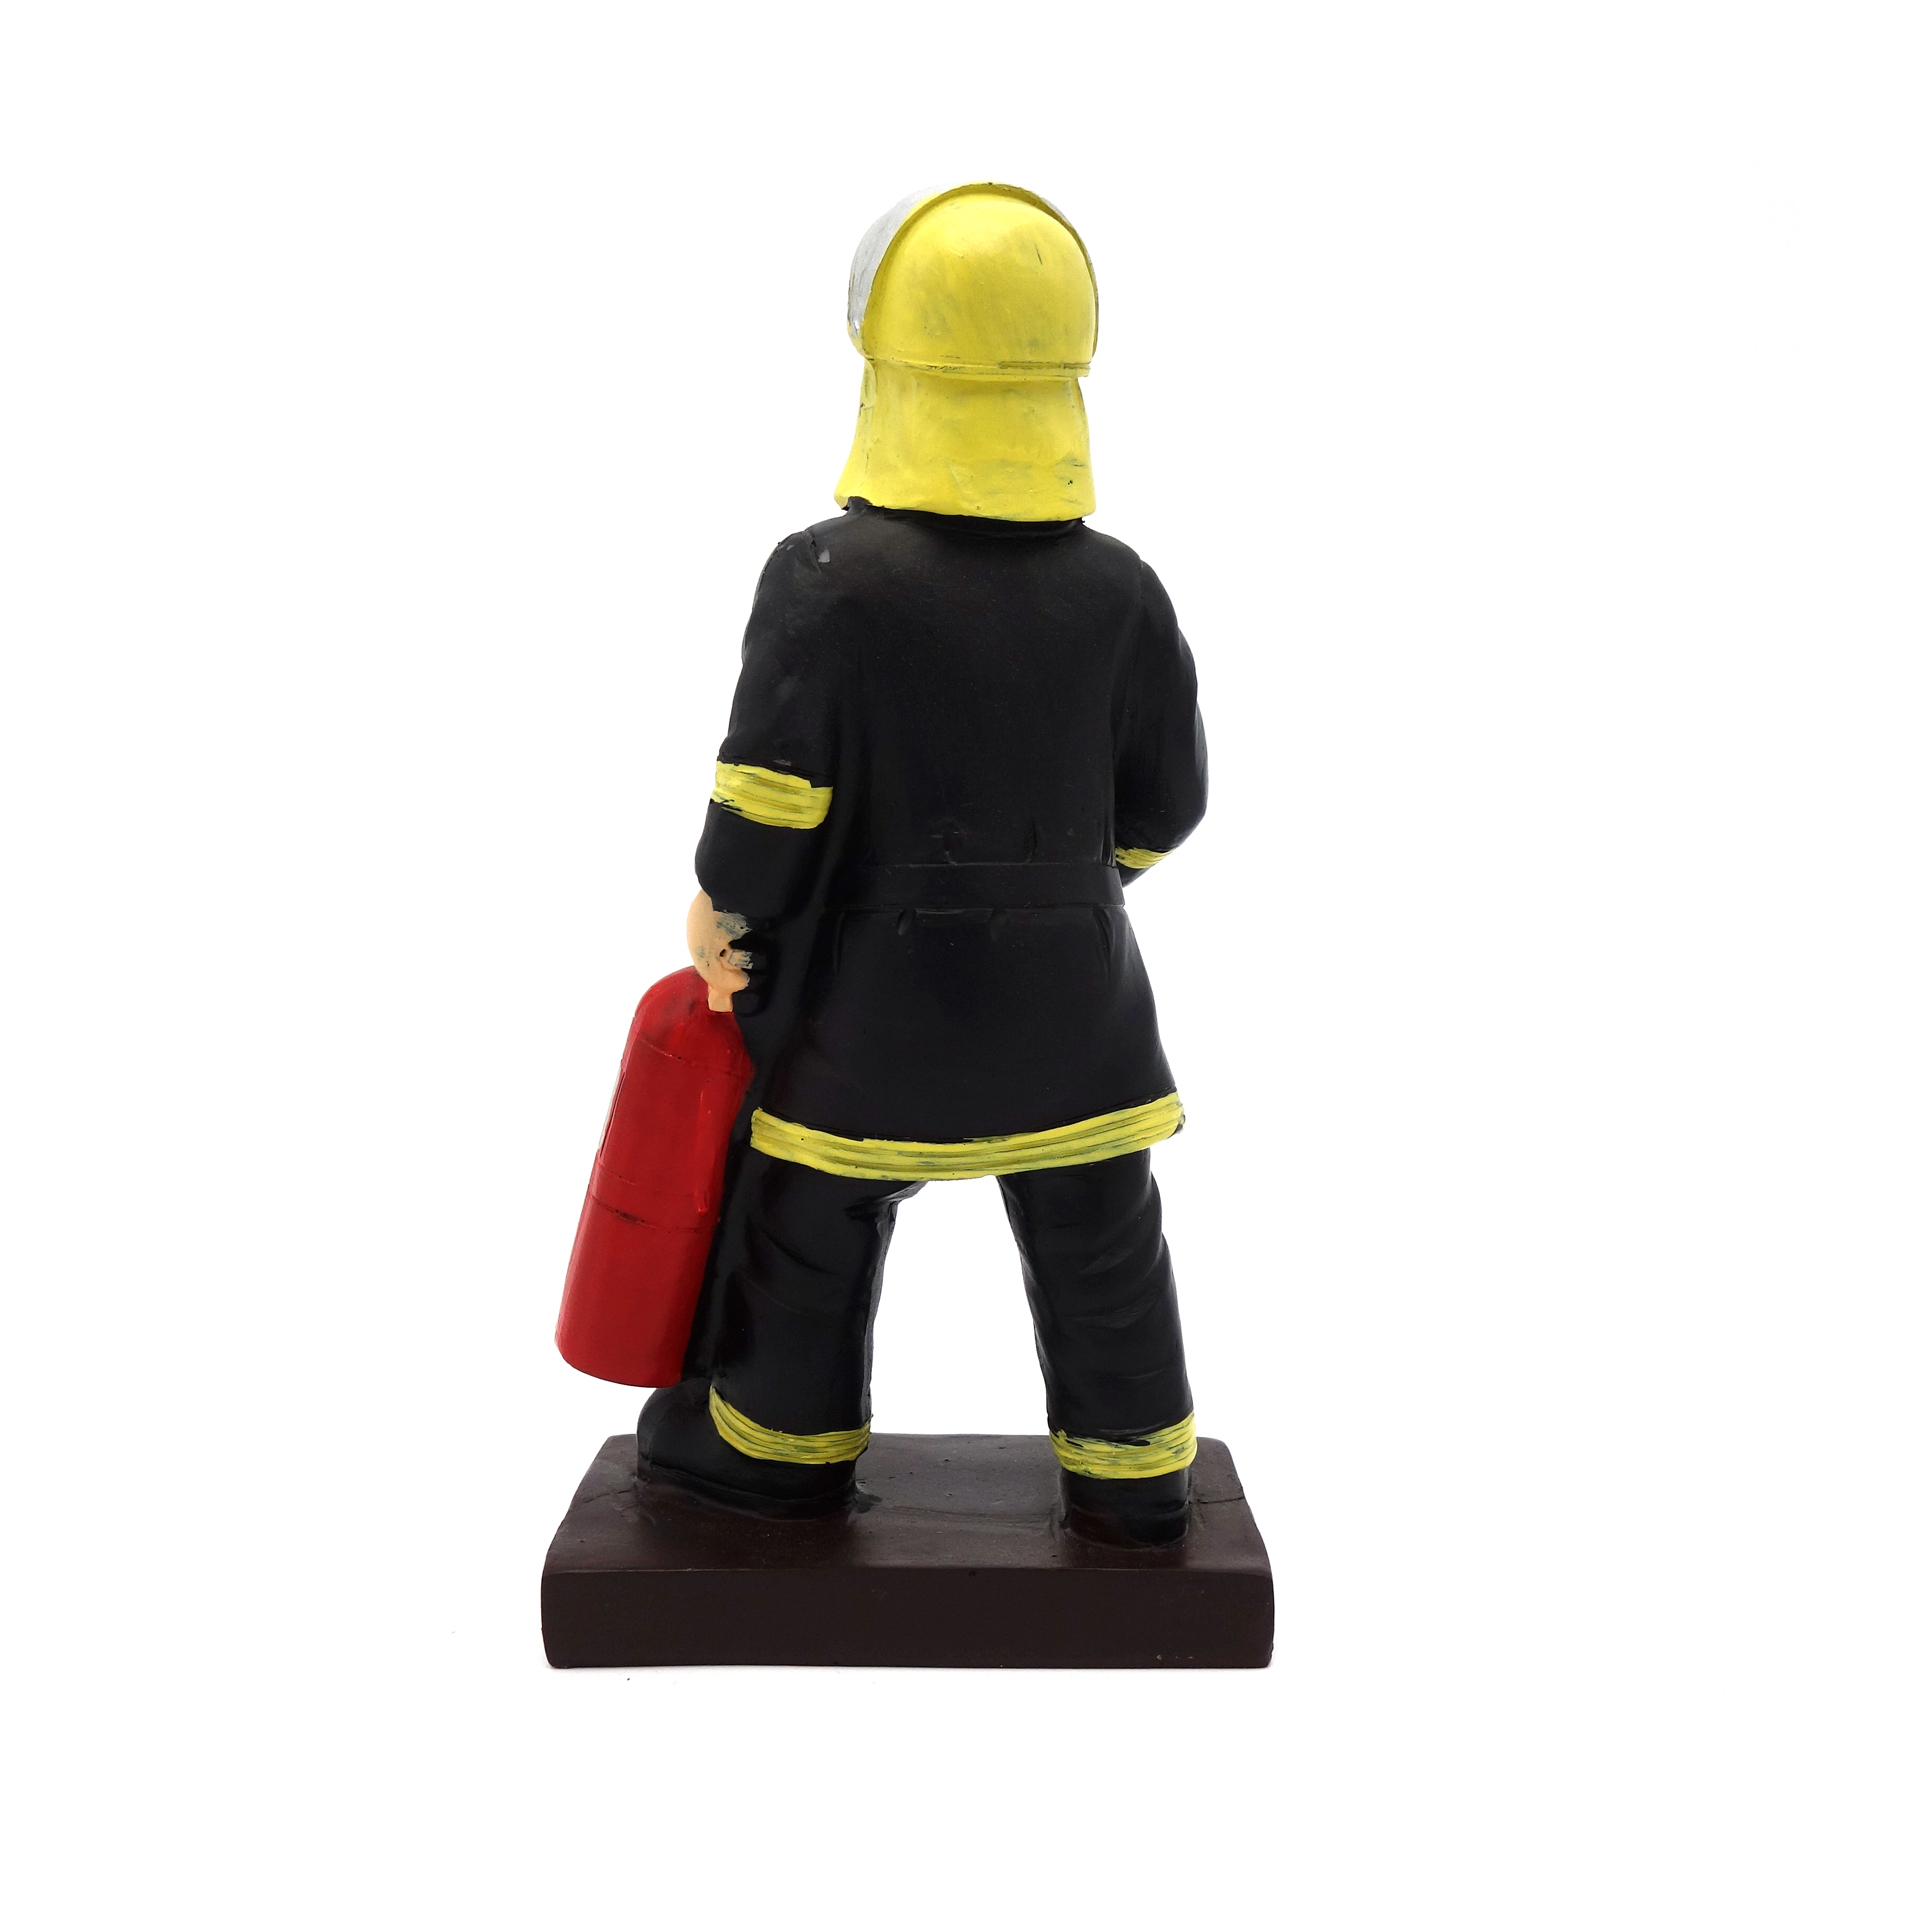 Feuerwehrmann "Dem Besten" Dekorationsfigur